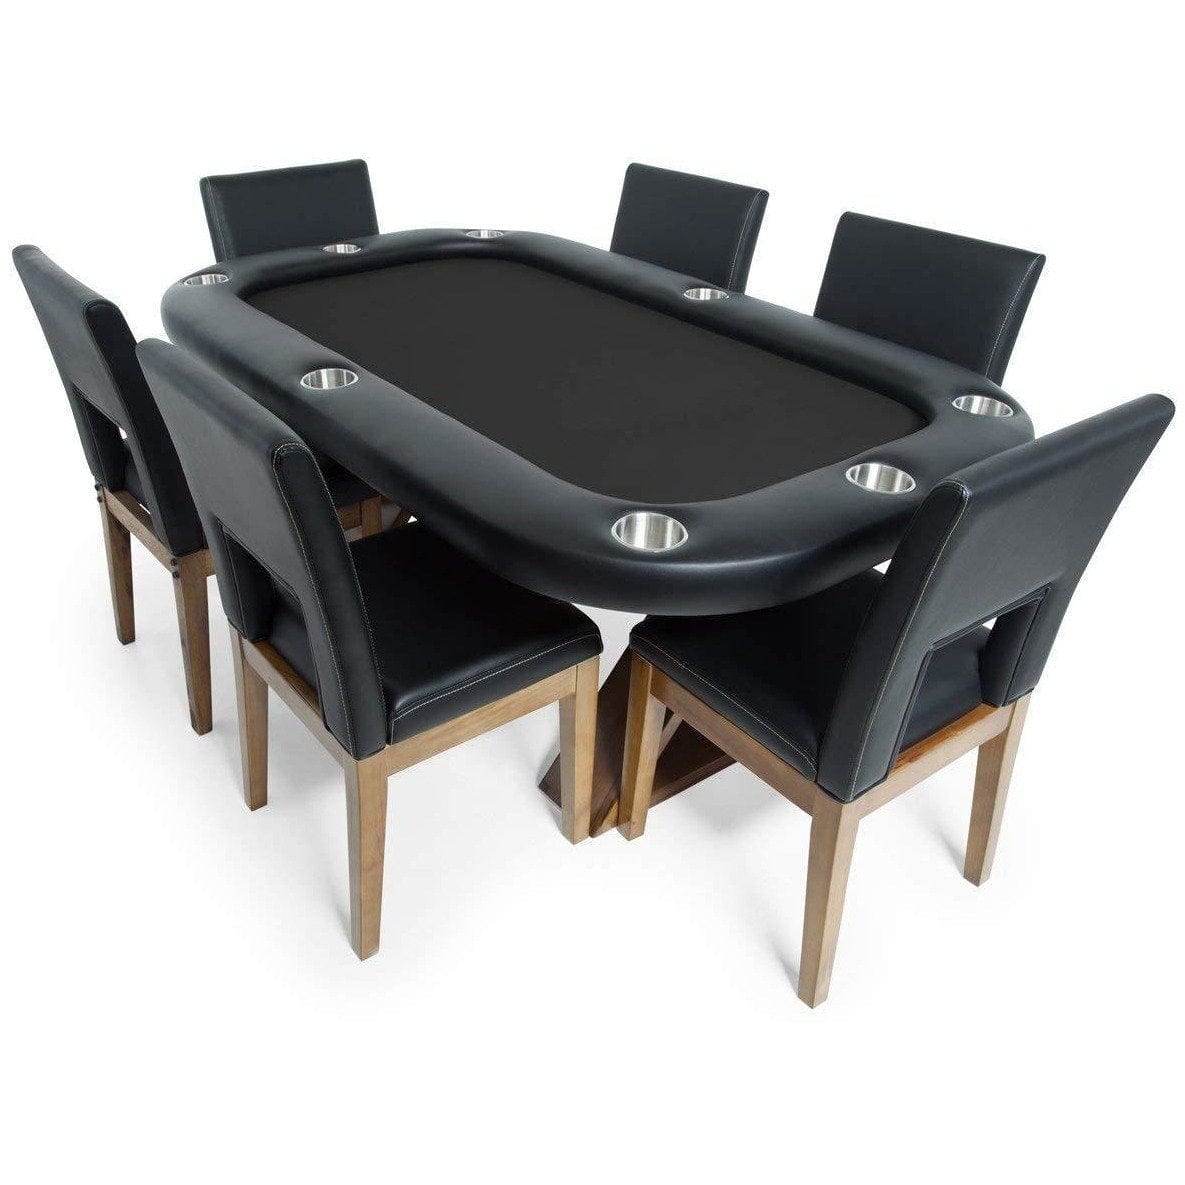 BBO Poker Tables BBO Poker Tables Helmsley Poker Dining Chair Set Poker Dining Chair